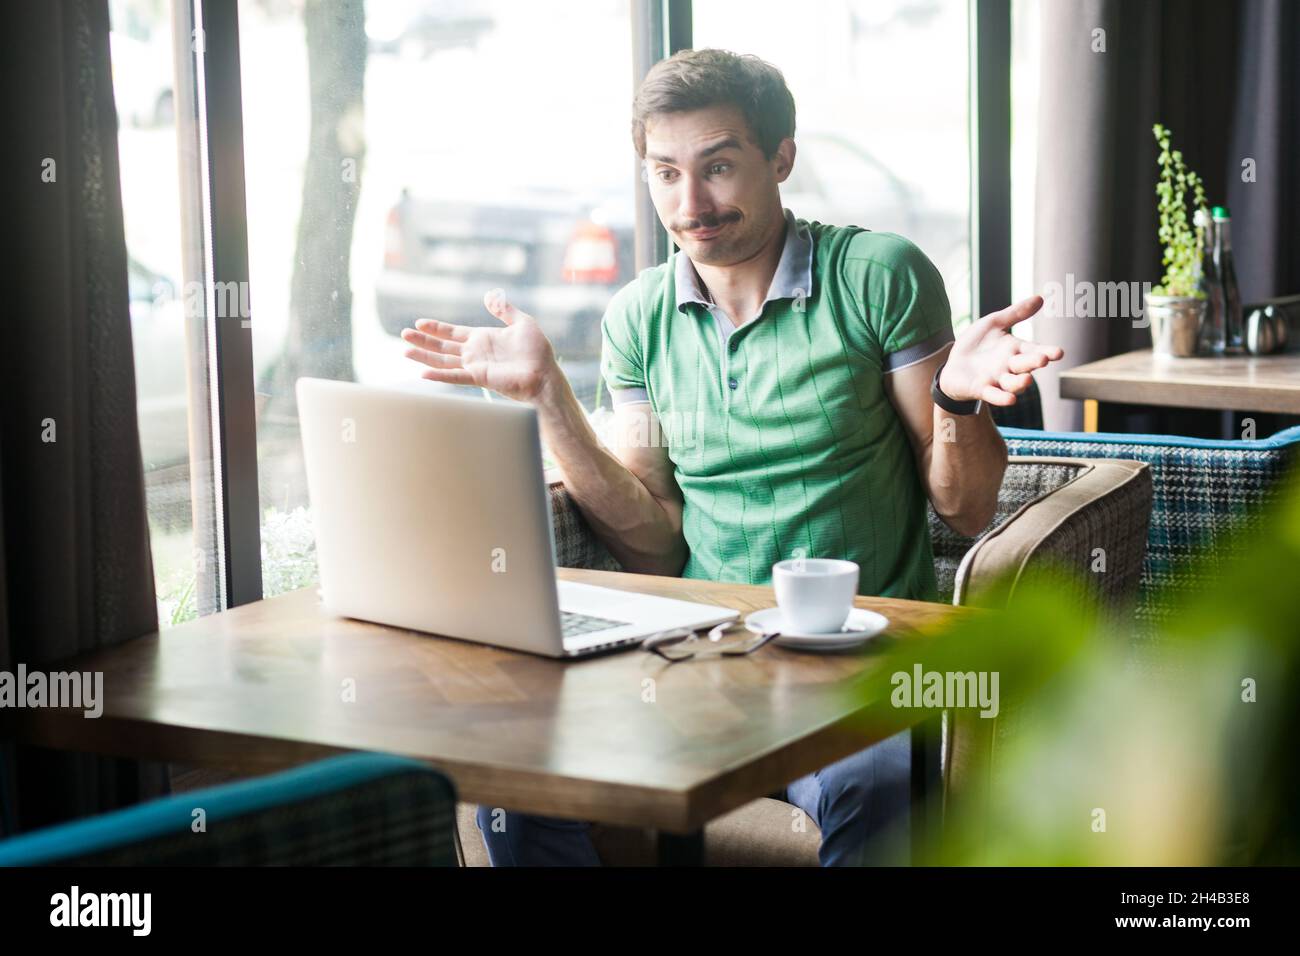 Portrait d'un employé confus portant un T-shirt vert, travaillant en ligne sur un ordinateur portable, haussant les épaules, ne faisant aucun geste d'idée, quoi qu'il en soit.Prise de vue à l'intérieur près d'une grande fenêtre, arrière-plan d'un café. Banque D'Images